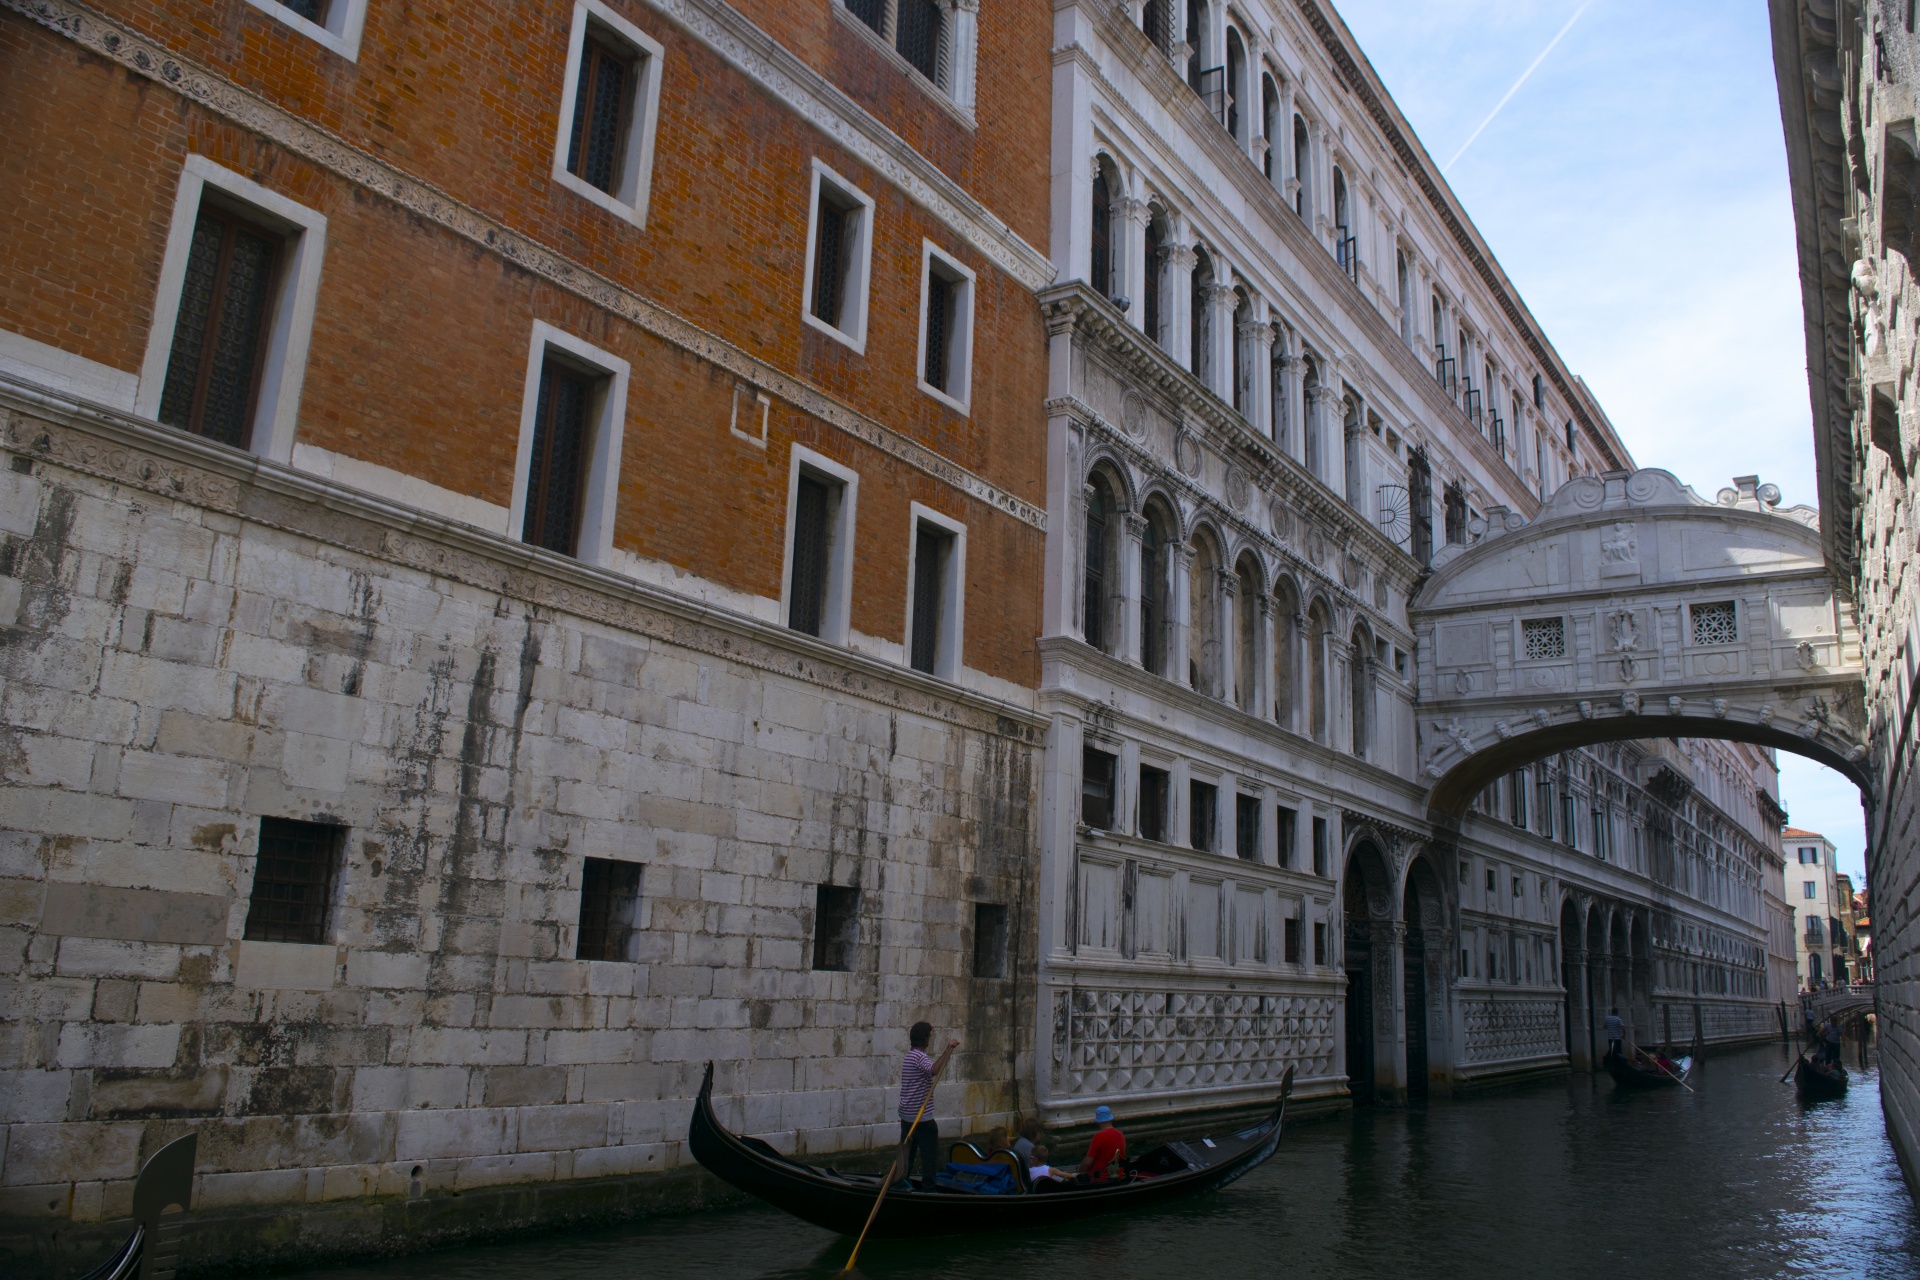 Venice Image 1002